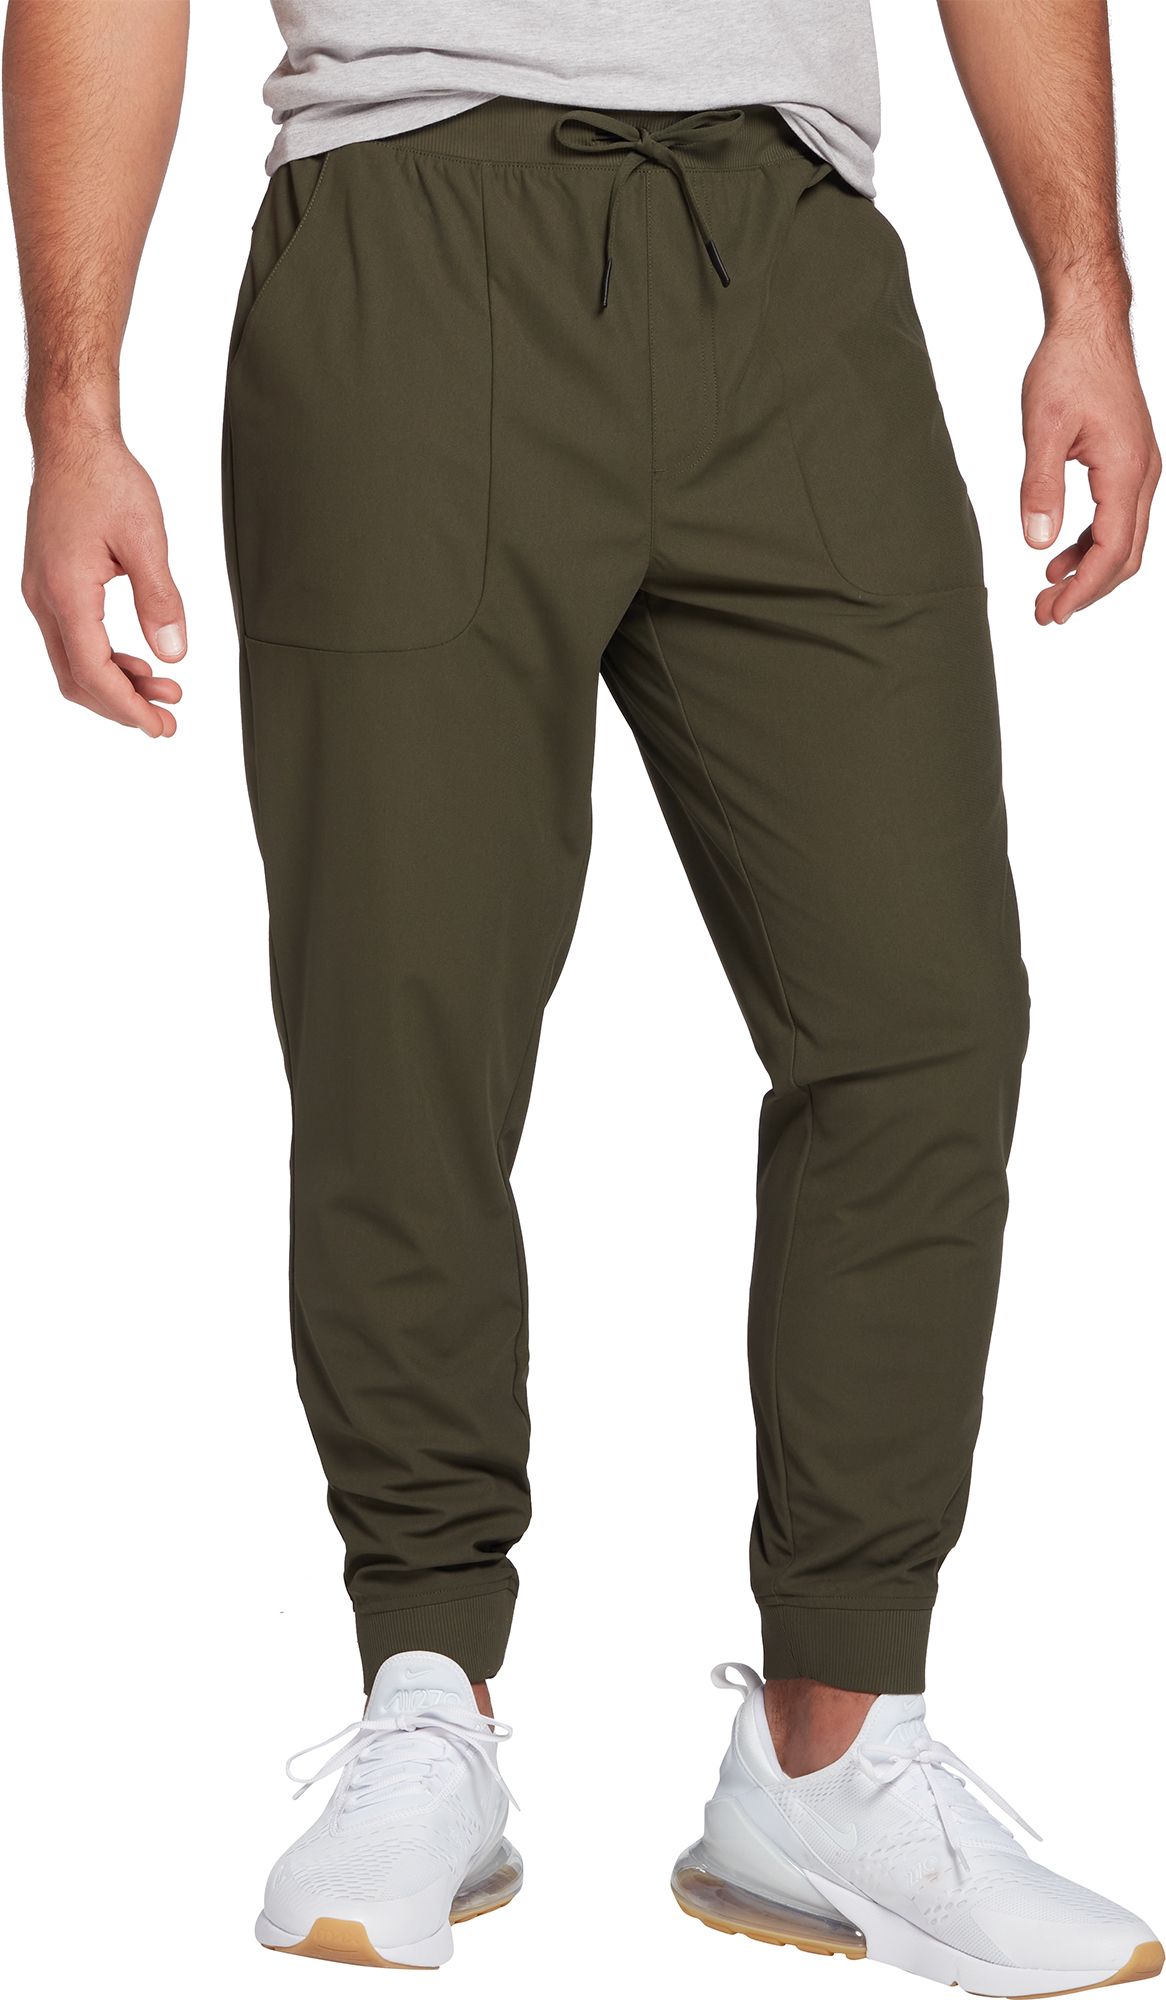 VRST Commuter Jogger Pants Men XL Olive Green Cargo Pockets